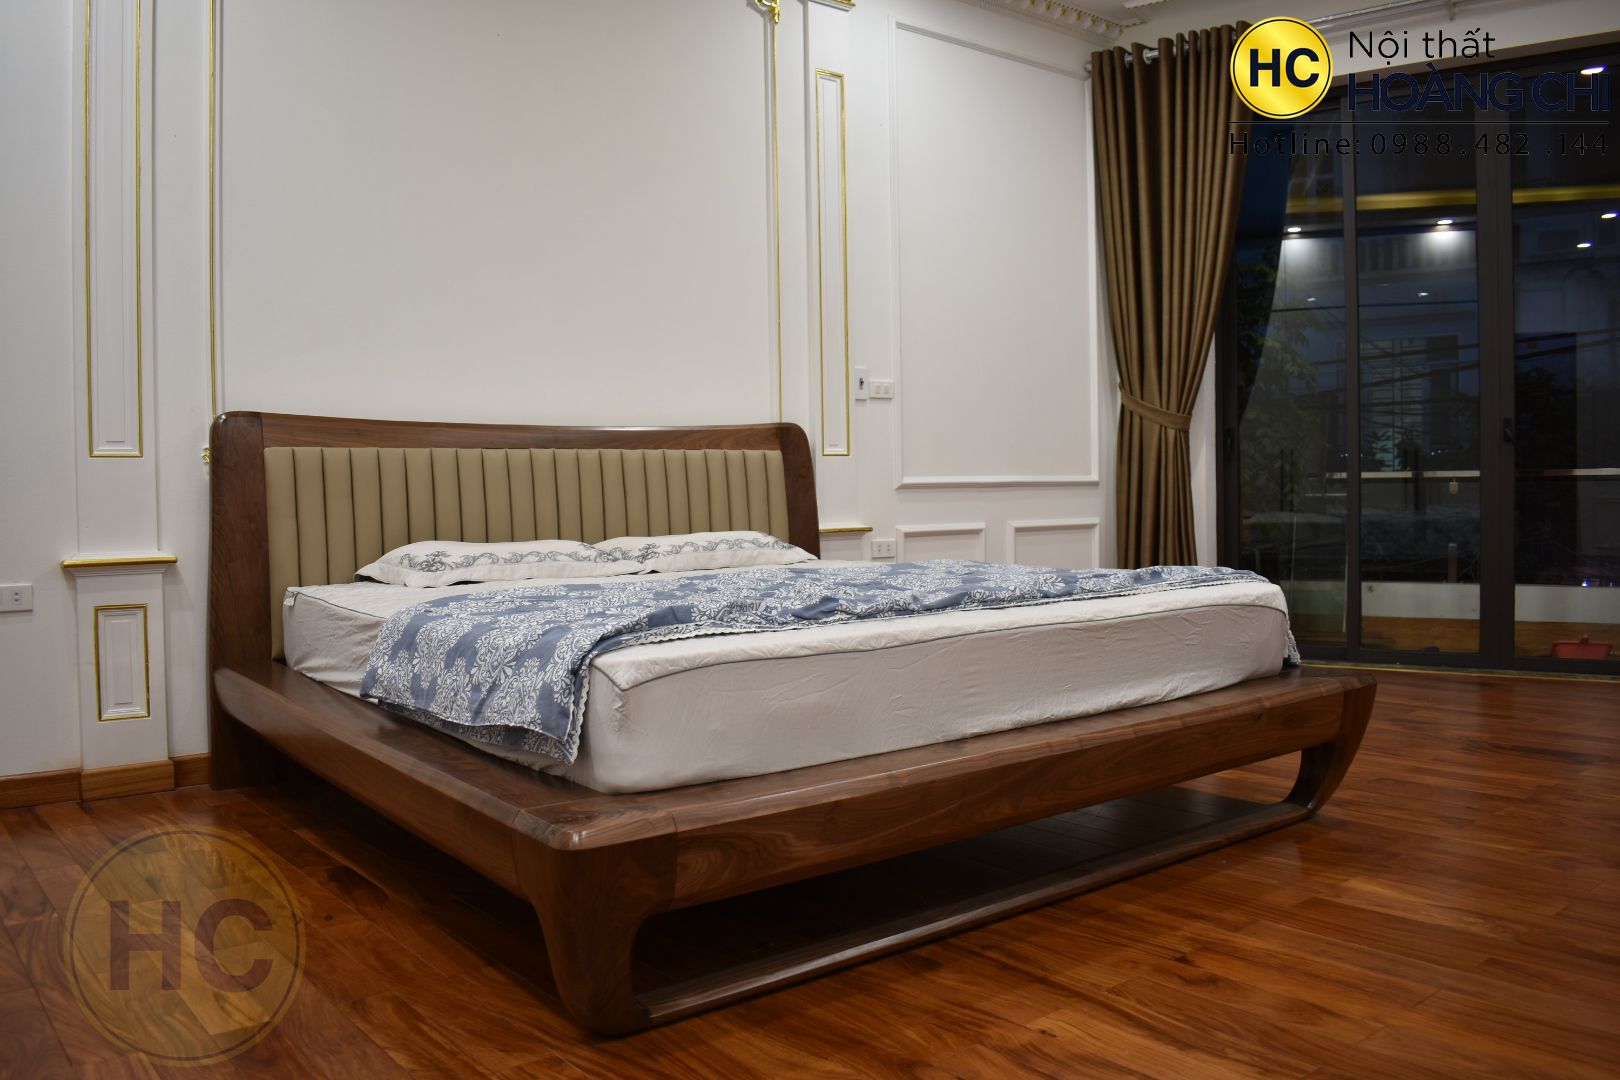 Giường ngủ gỗ óc chó mẫu mới-GN004-1m8 x 2m